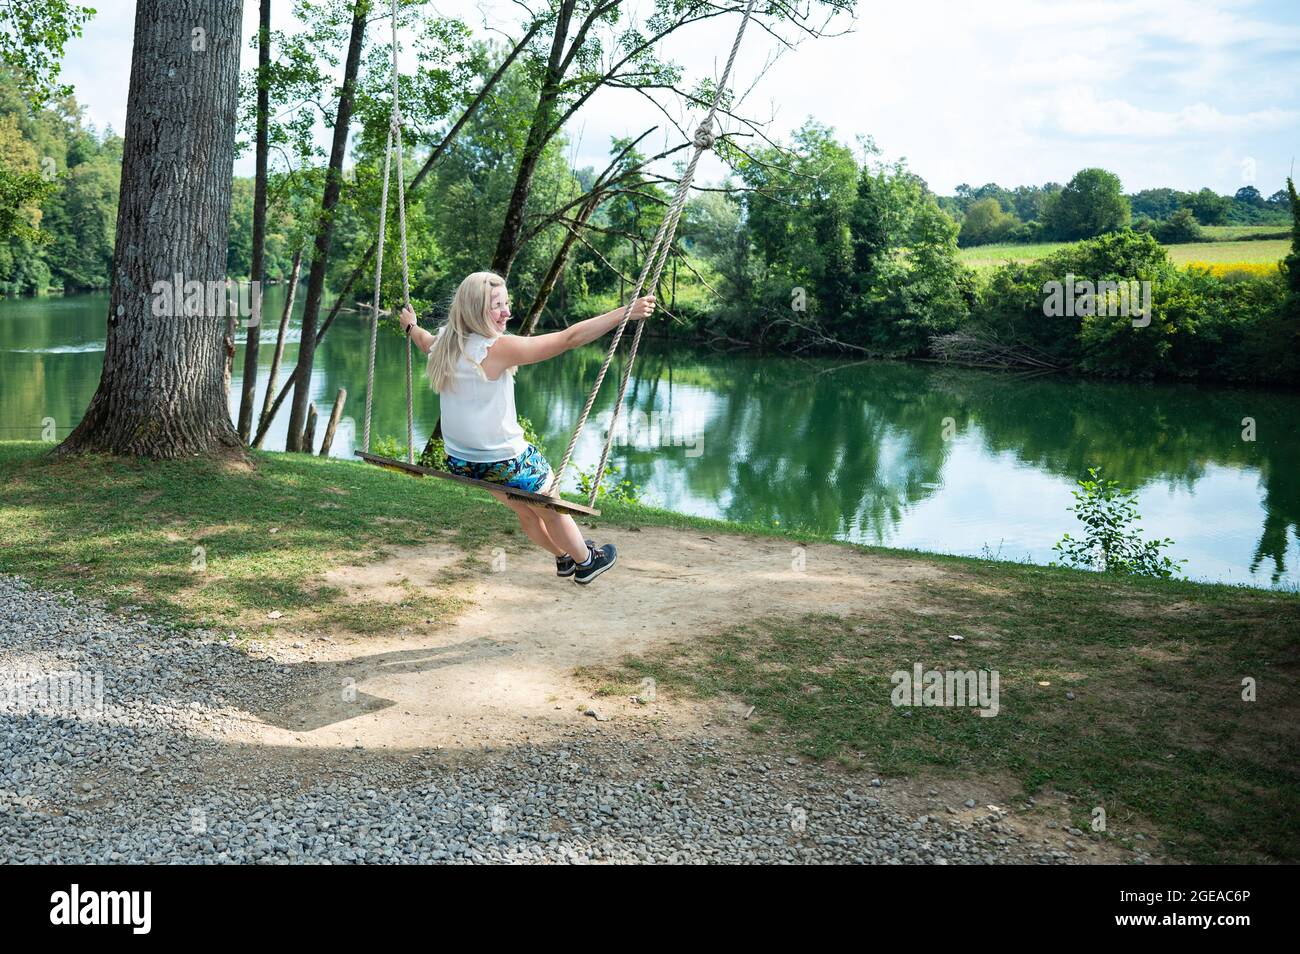 Blonde Frau auf einer riesigen Schaukel mit Blick auf einen grünen Fluss während der Sommerferien - ein glücklicher Tag frei Stockfoto